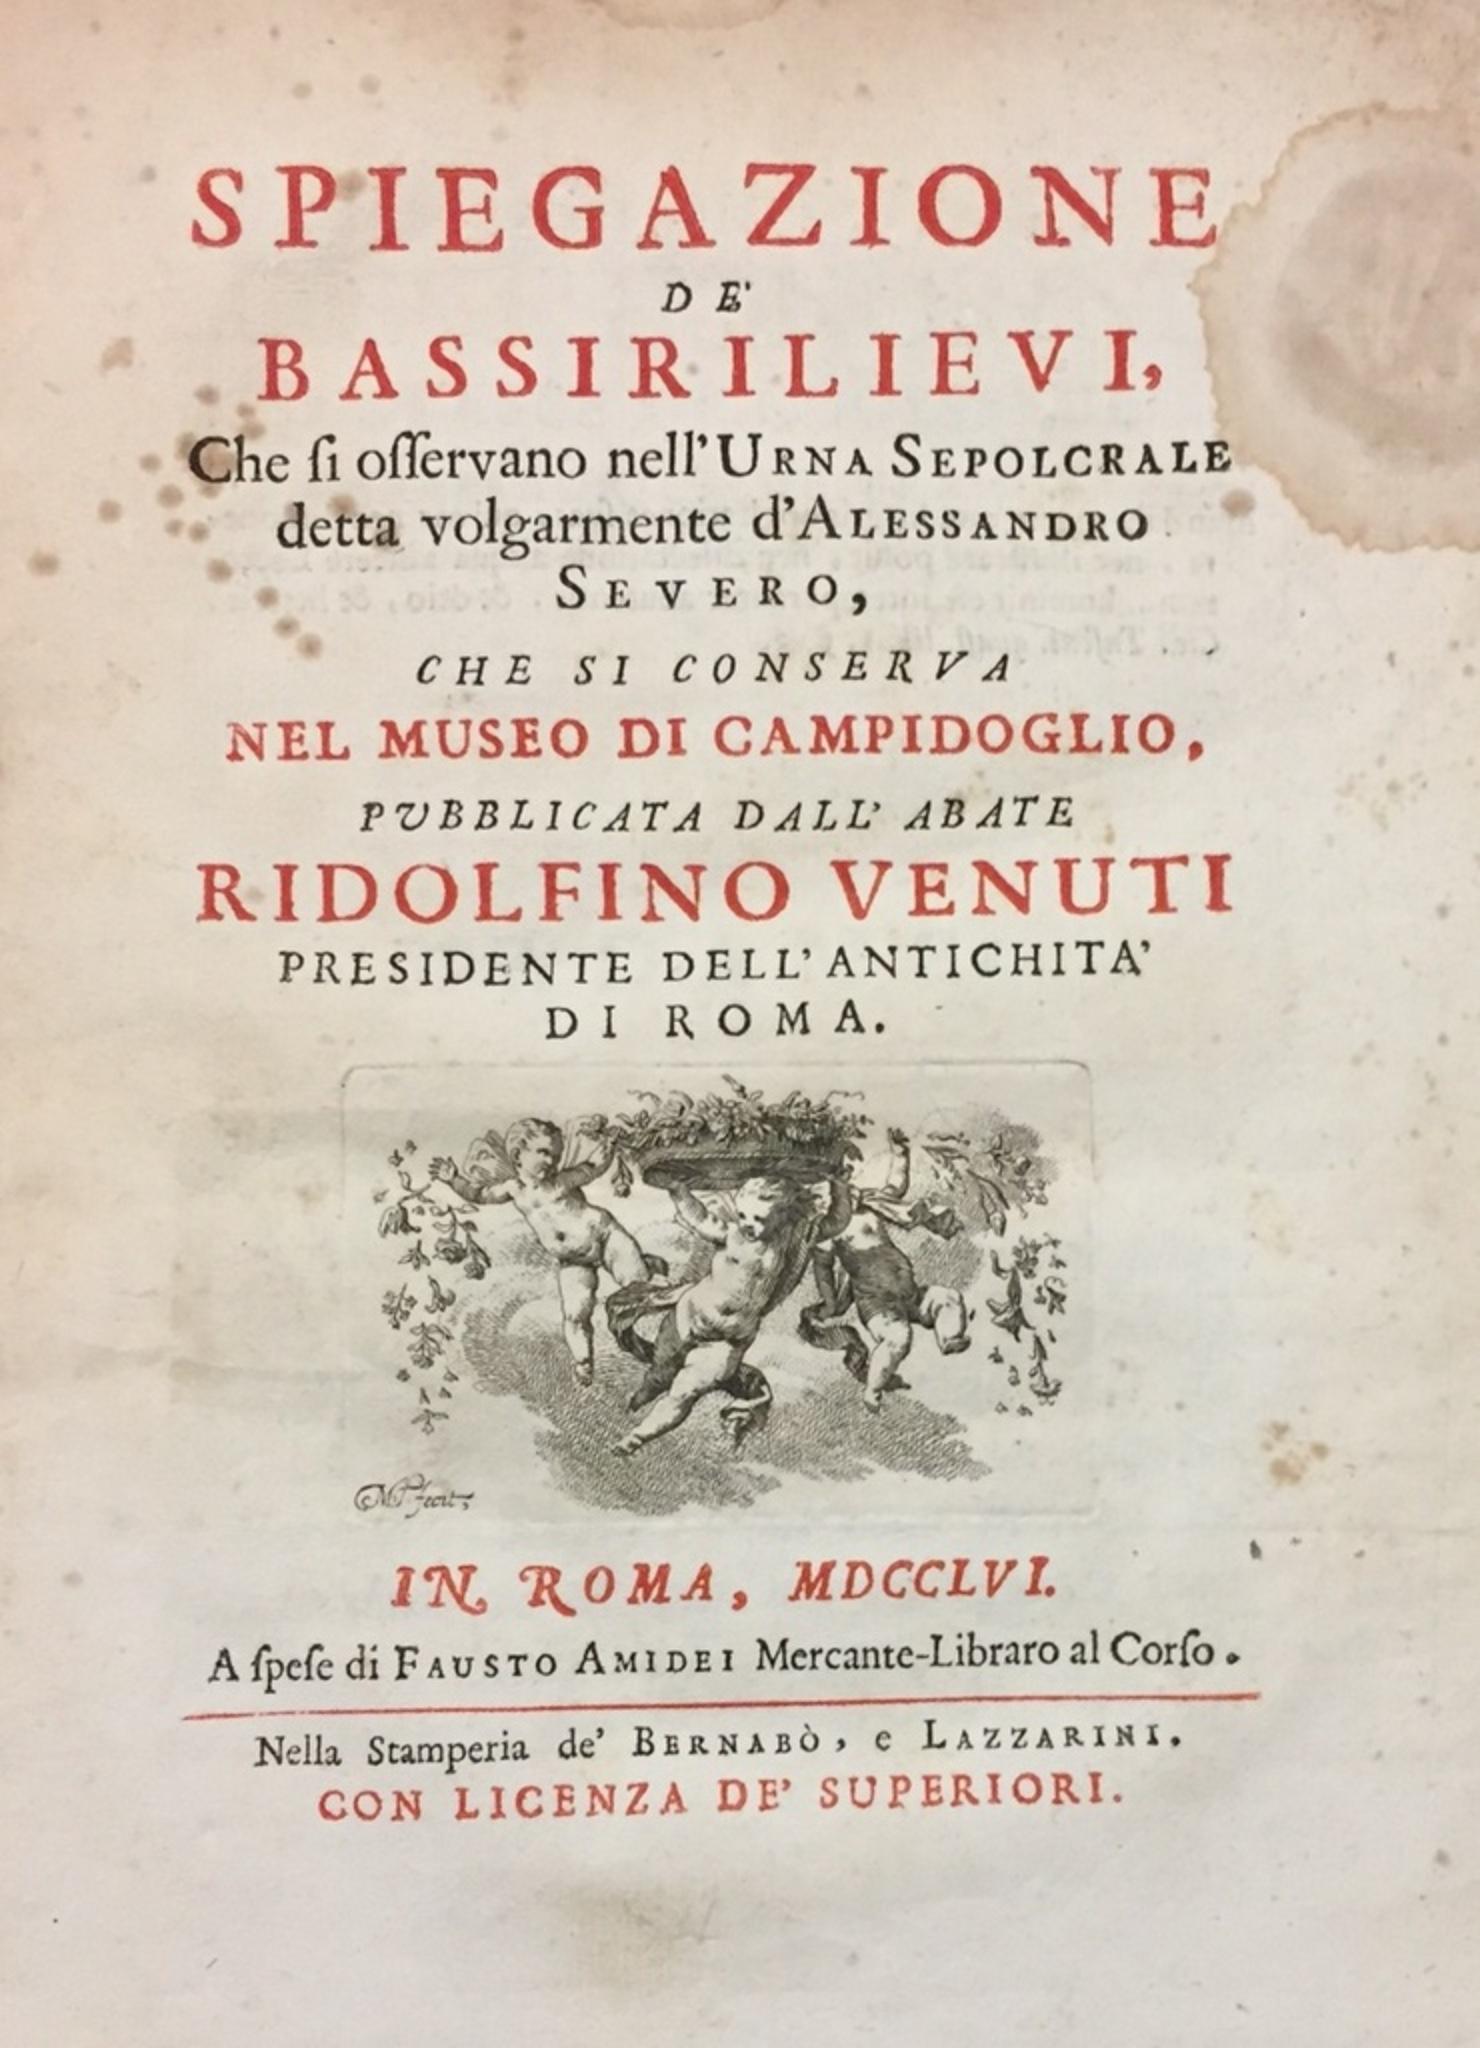 Spiegazione de' bassirilievi dell'urna detta d'Alessandro Severo - 1756 – Art von Ridolfino Venuti 